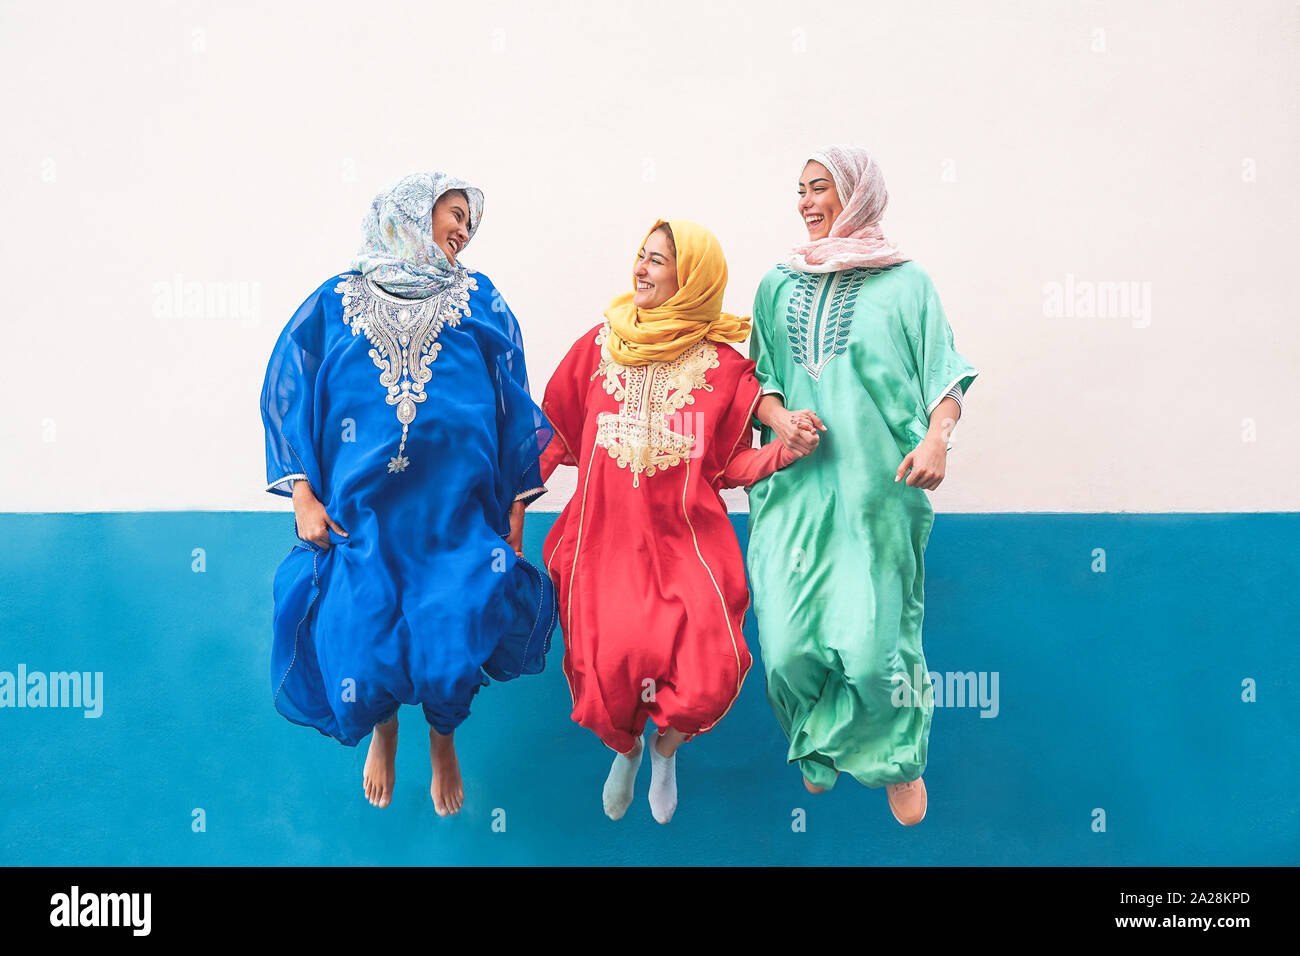 Heureux les femmes musulmanes sautant ensemble en plein air - Arabian teen girls having fun in the city - concept de costume,les gens, la culture et la religion Banque D'Images